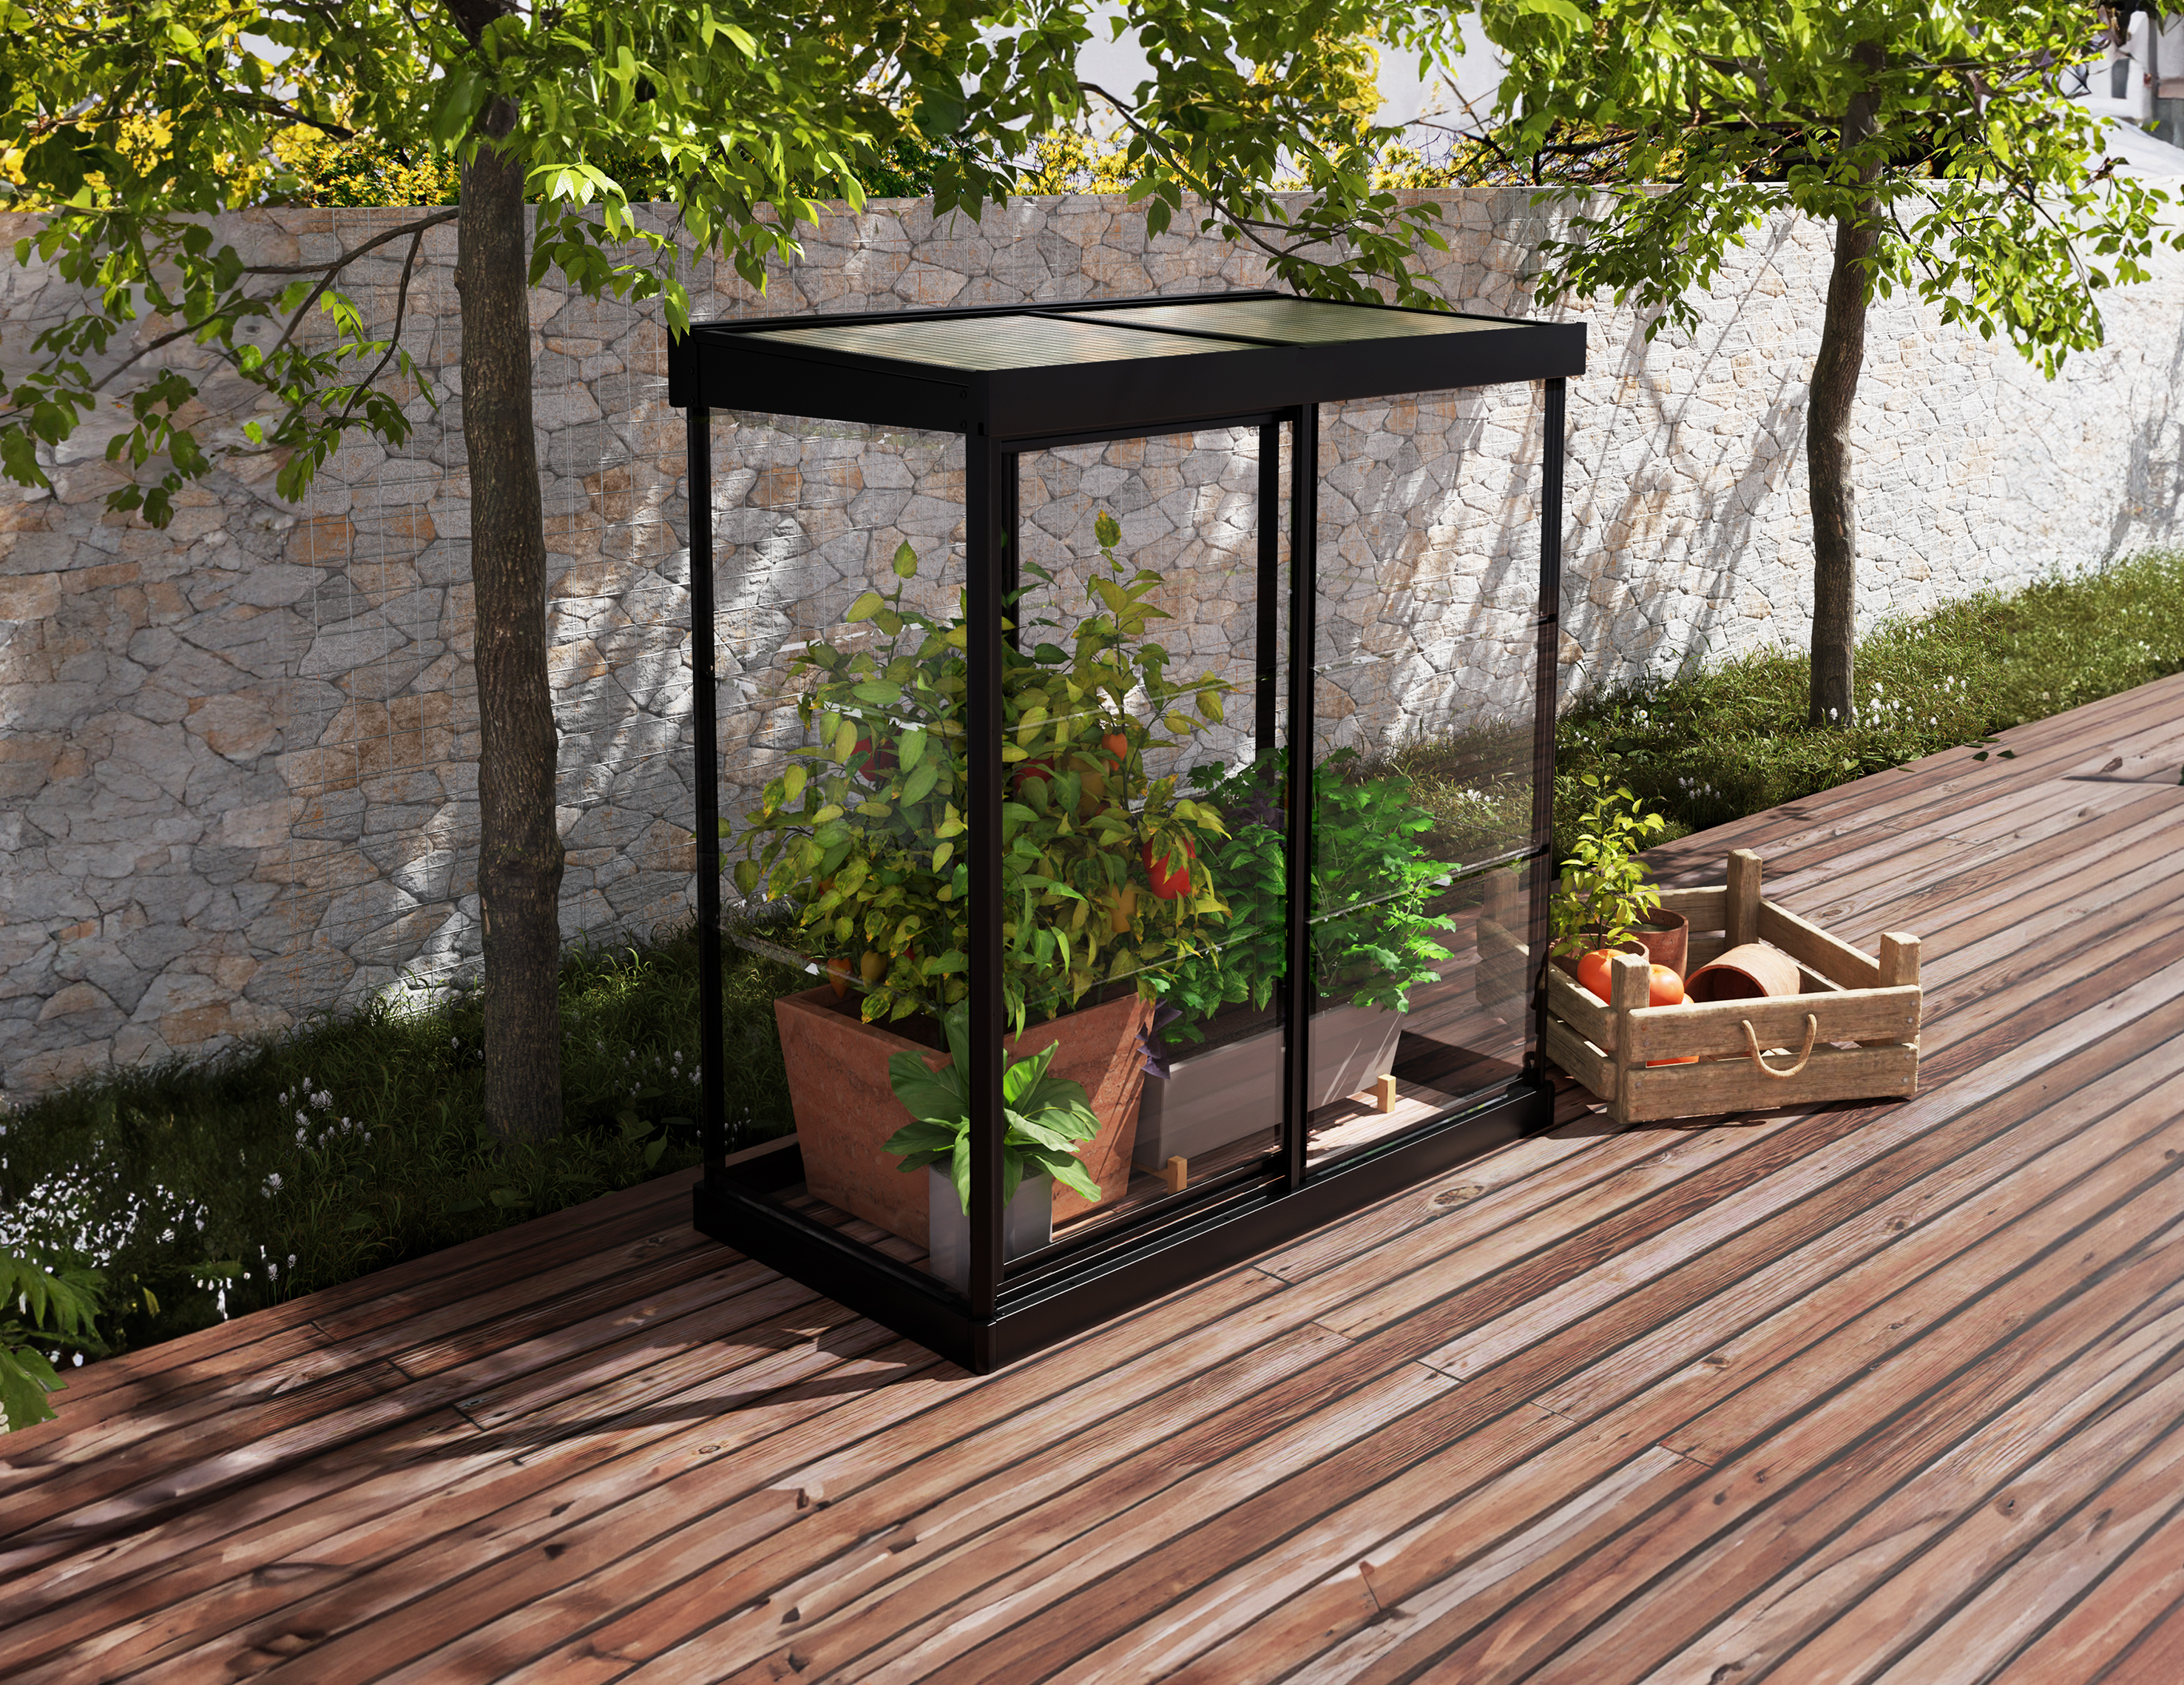 Dieses Mini-Gewächshaus ist perfekt für Gärtneranfänger oder solche mit begrenztem Platzangebot